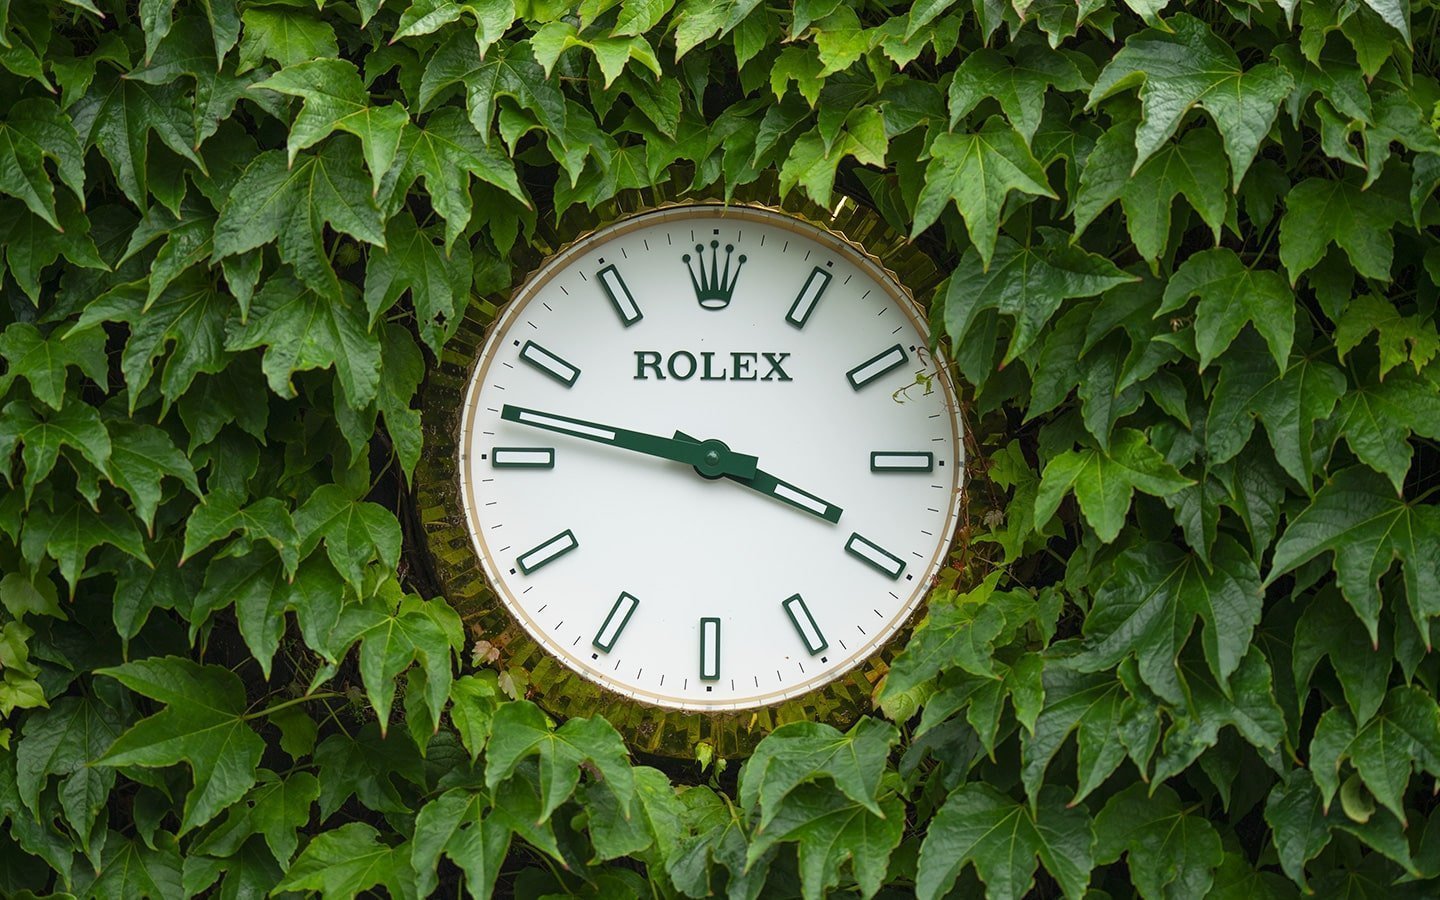 Rolex clock at Wimbledon